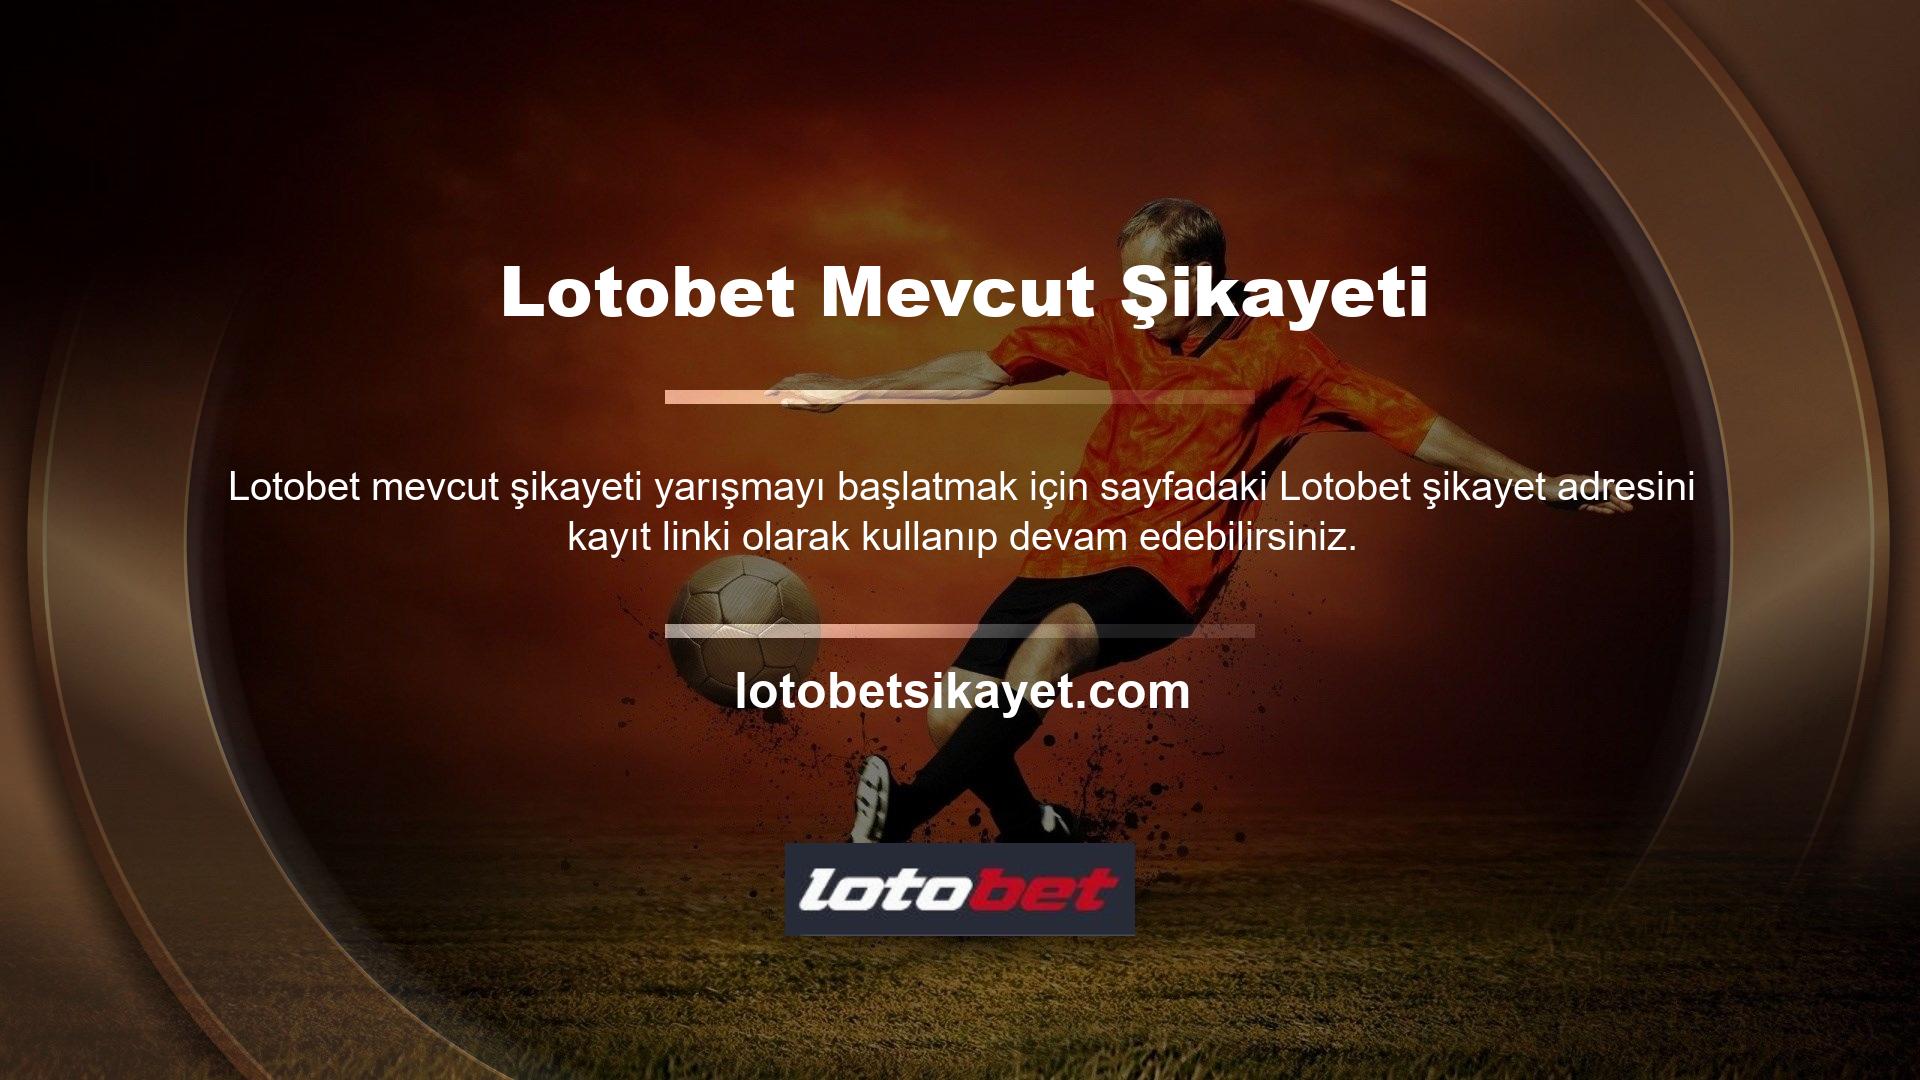 Sayfa, Lotobet olağanüstü becerileri nedeniyle çoğu oyuncu tarafından tercih ediliyor